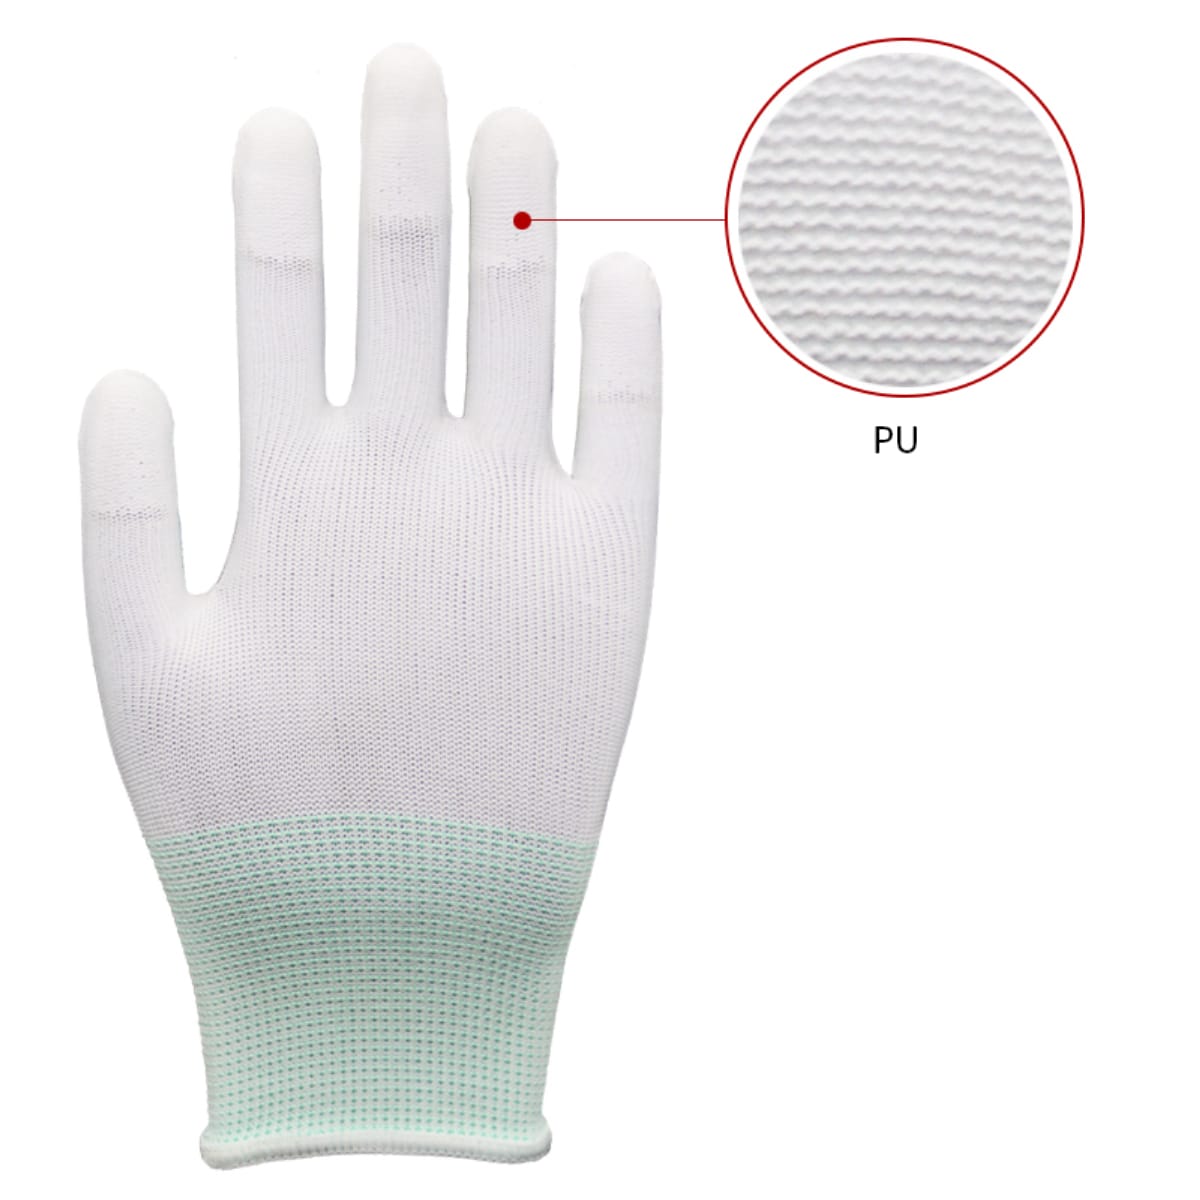 нейлоновый вкладыш, полиуретановое покрытие кончиков пальцев (1)